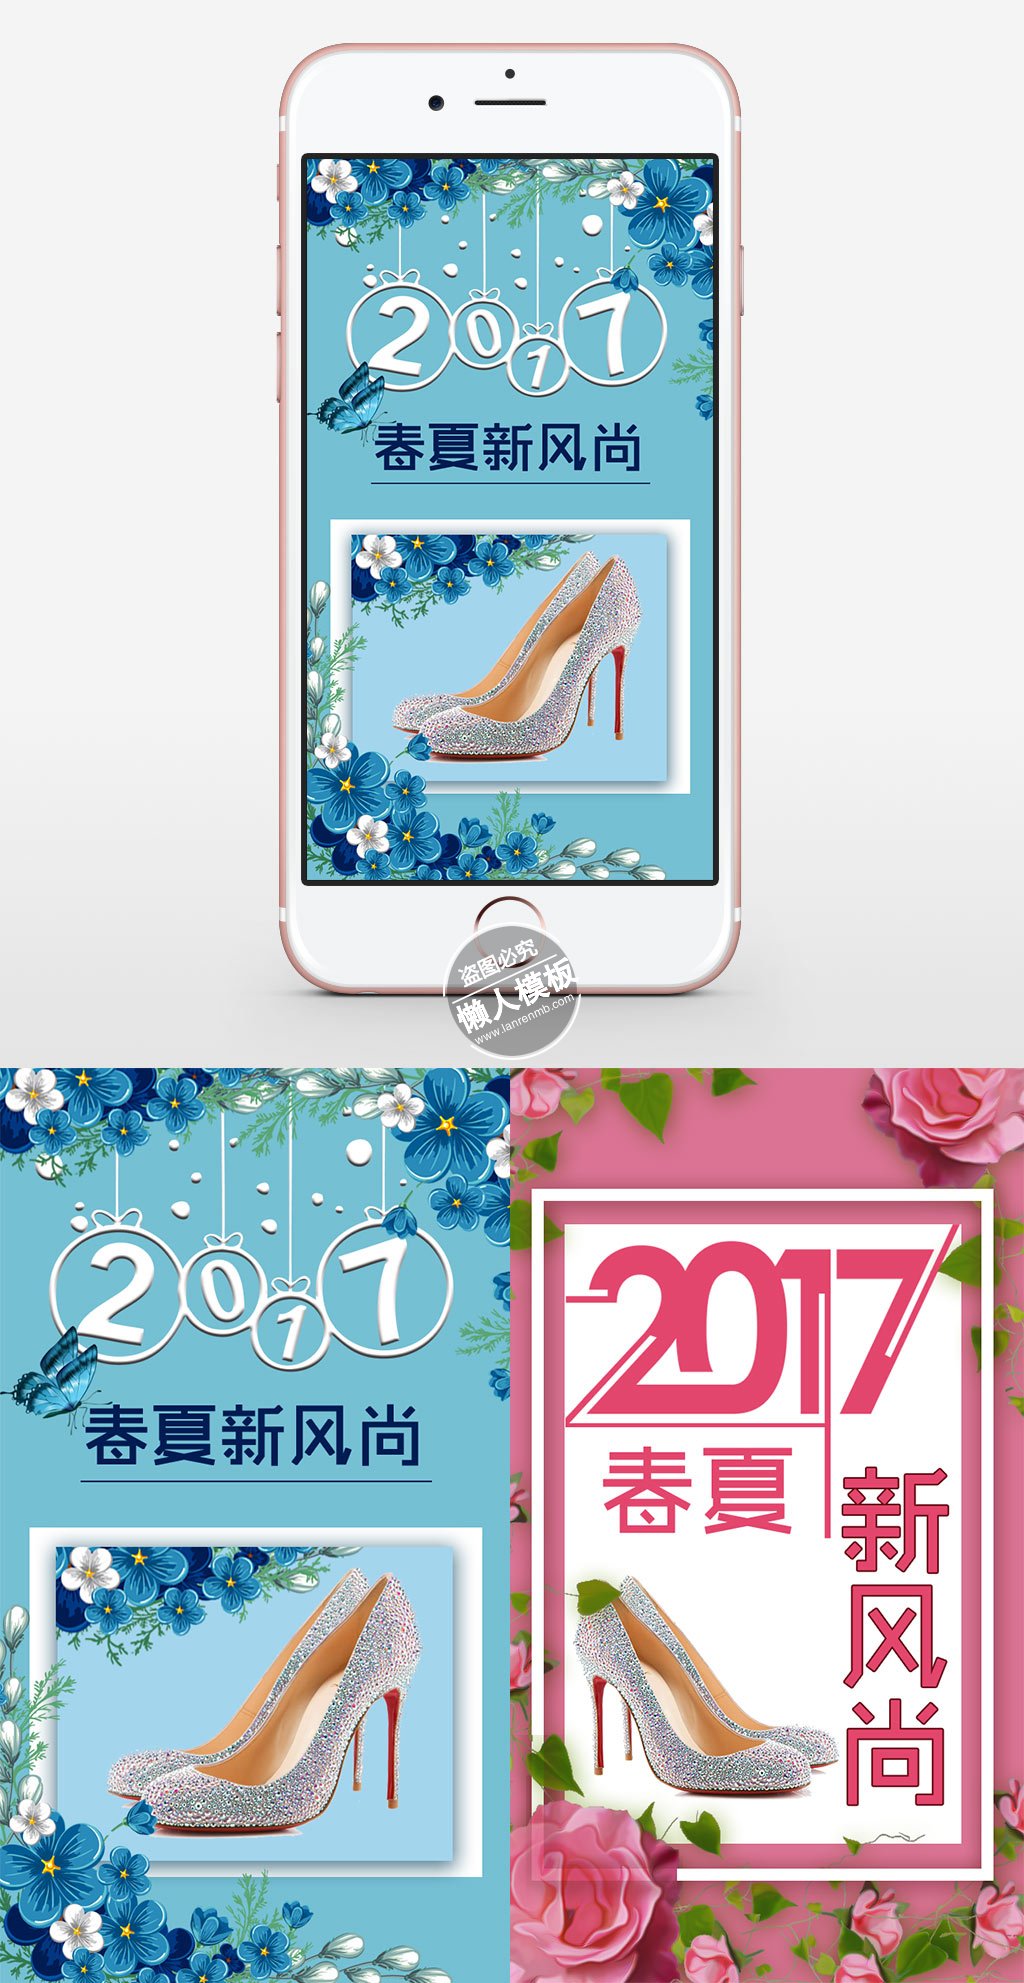 春夏新风尚海报ui界面设计移动端手机网页psd素材下载